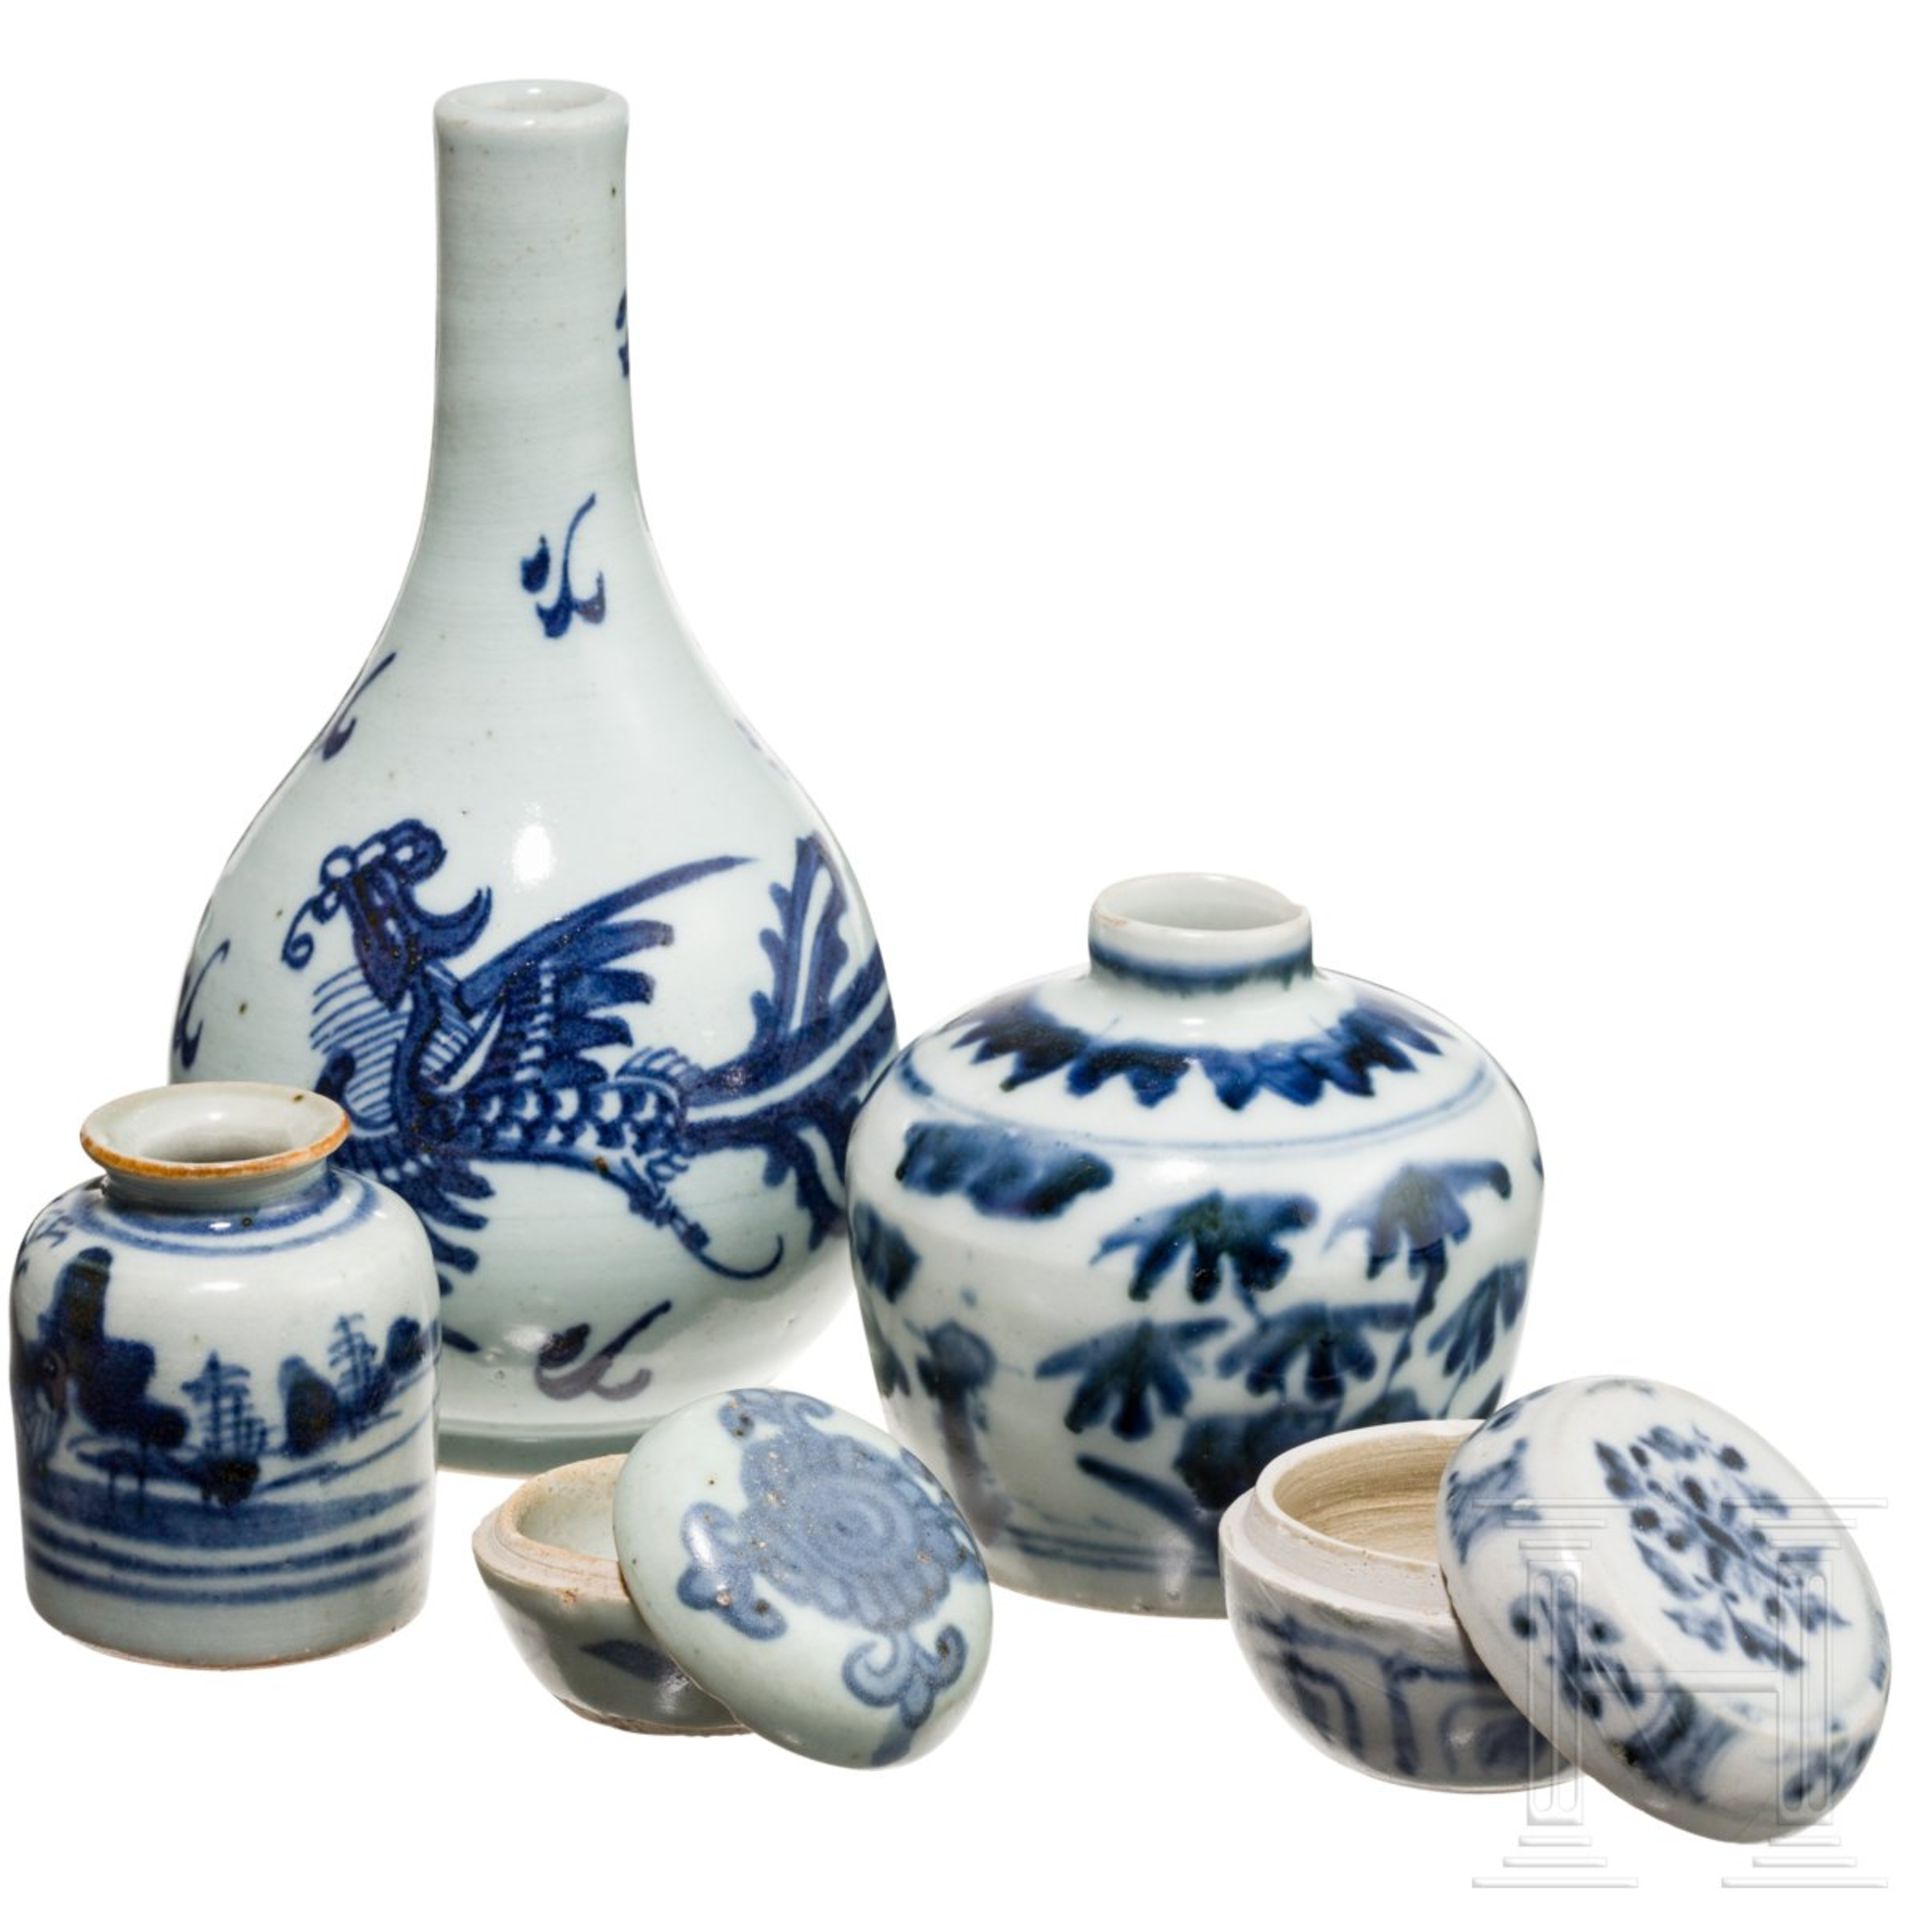 Drei kleine Vasen und zwei Döschen mit weiß-blauer Dekoration, China, 16. - 17. Jhdt.